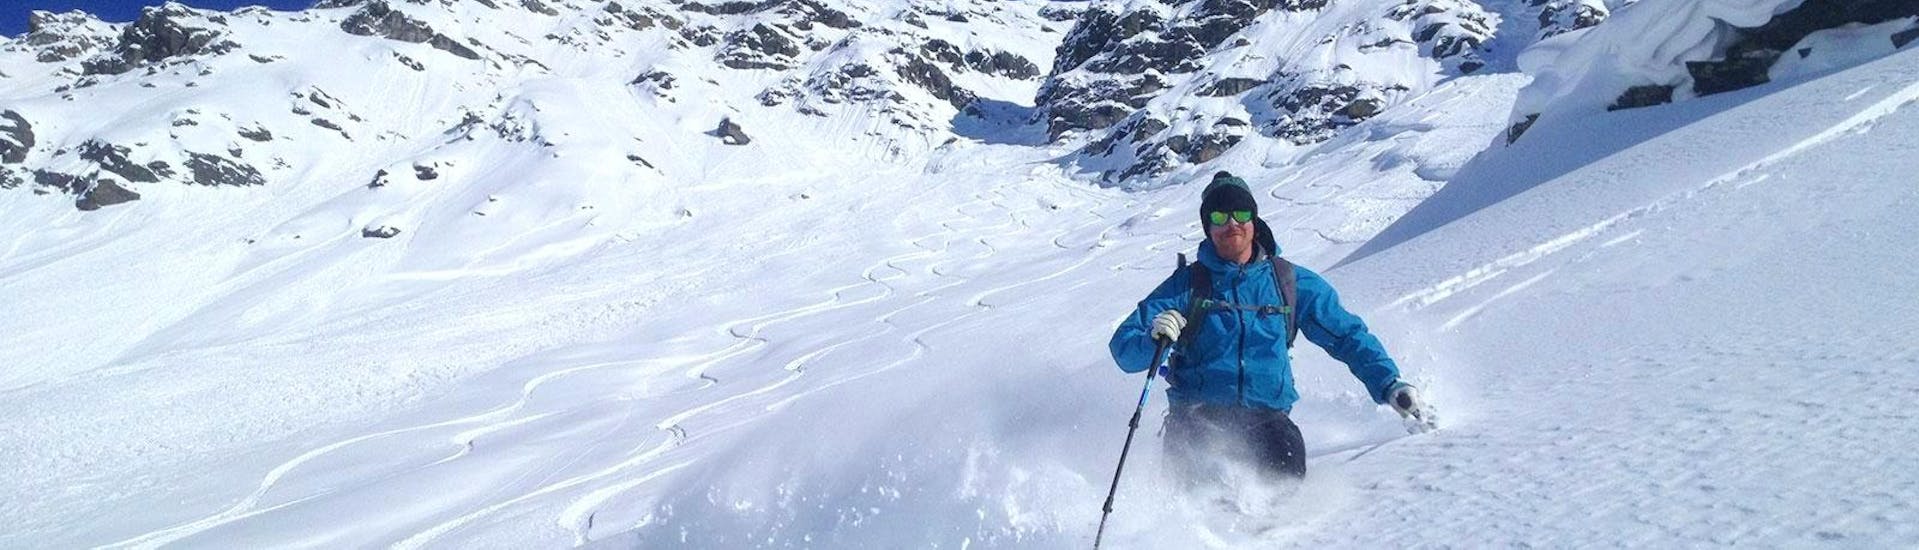 Un freerideur profite de la poudreuse fraîche pendant son Cours particulier de ski freeride pour Adultes - Avancé avec l'école de ski Snocool Tignes.